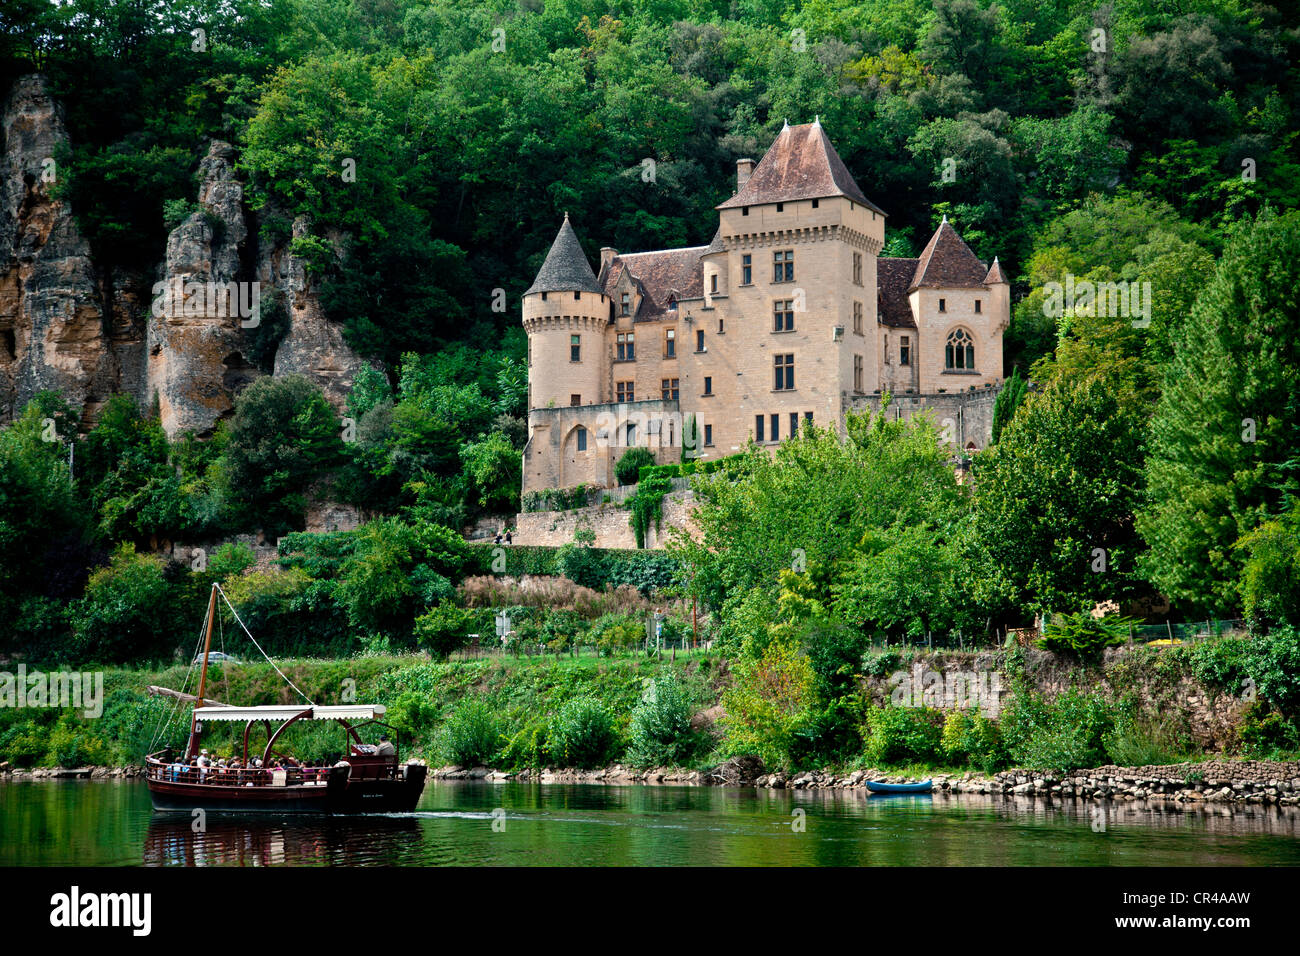 Château de La Malartrie castle, La Roque-Gageac village, Dordogne river, Dordogne Valley, Aquitaine, France, Europe Stock Photo